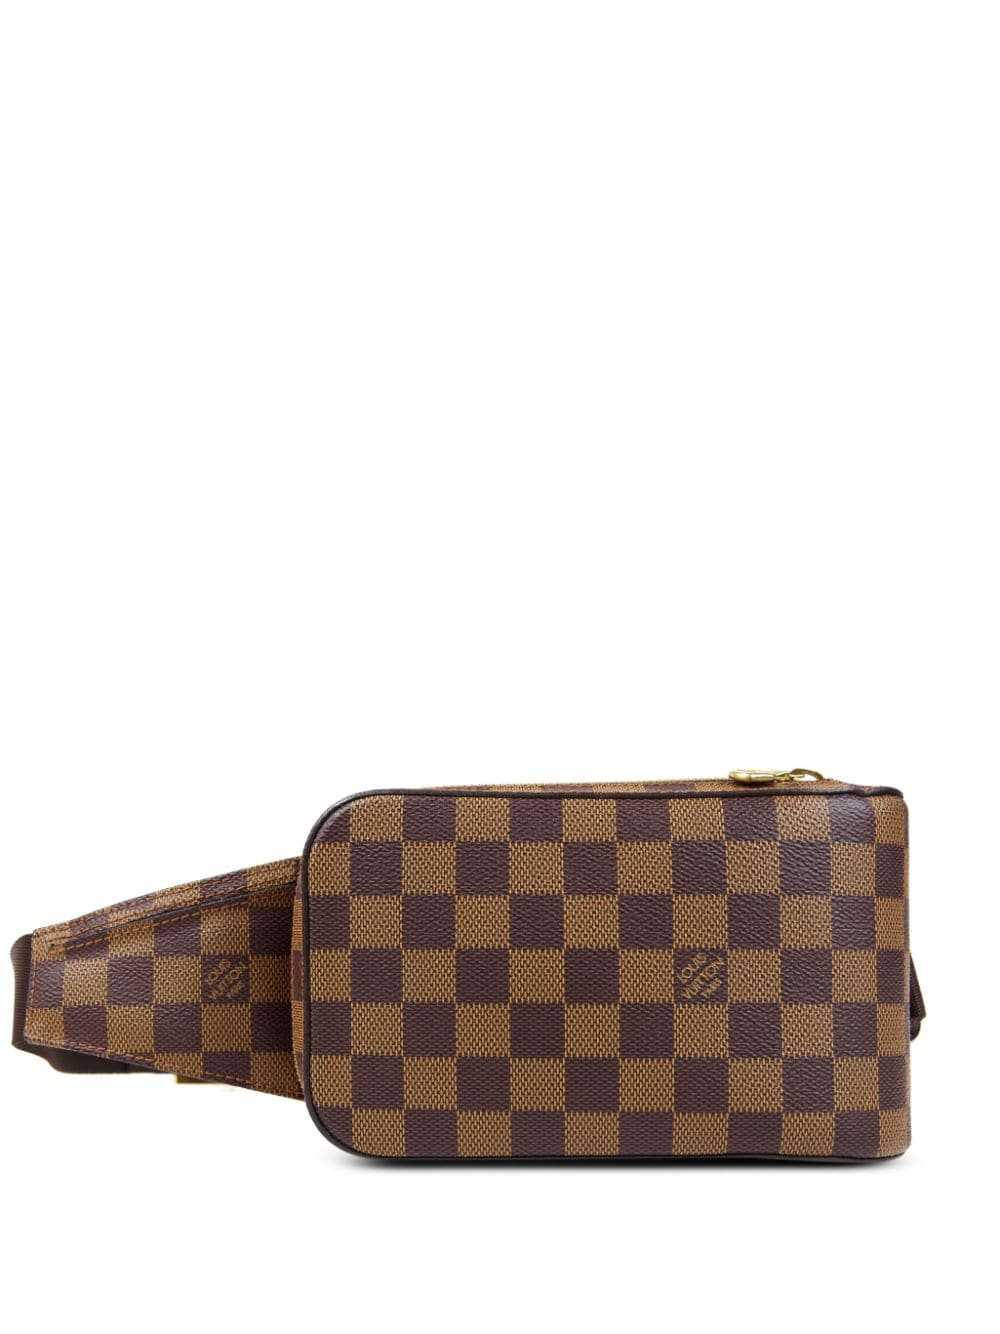 Louis Vuitton 2015 Pre-owned Monogram Macassar District PM Shoulder Bag